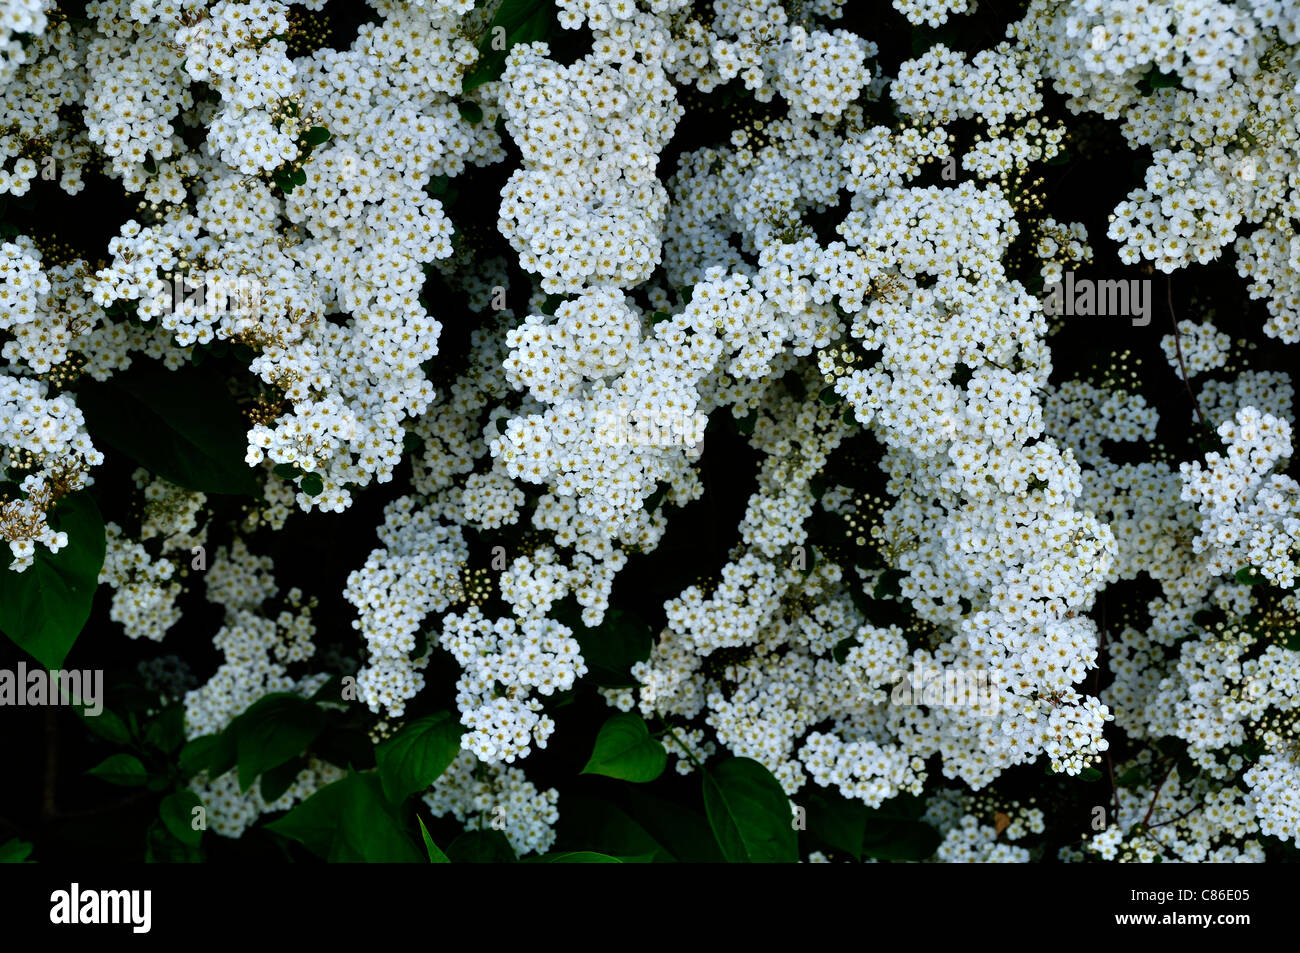 Spirea (Spiraea x vanhouttei) in bloom in the garden. Stock Photo